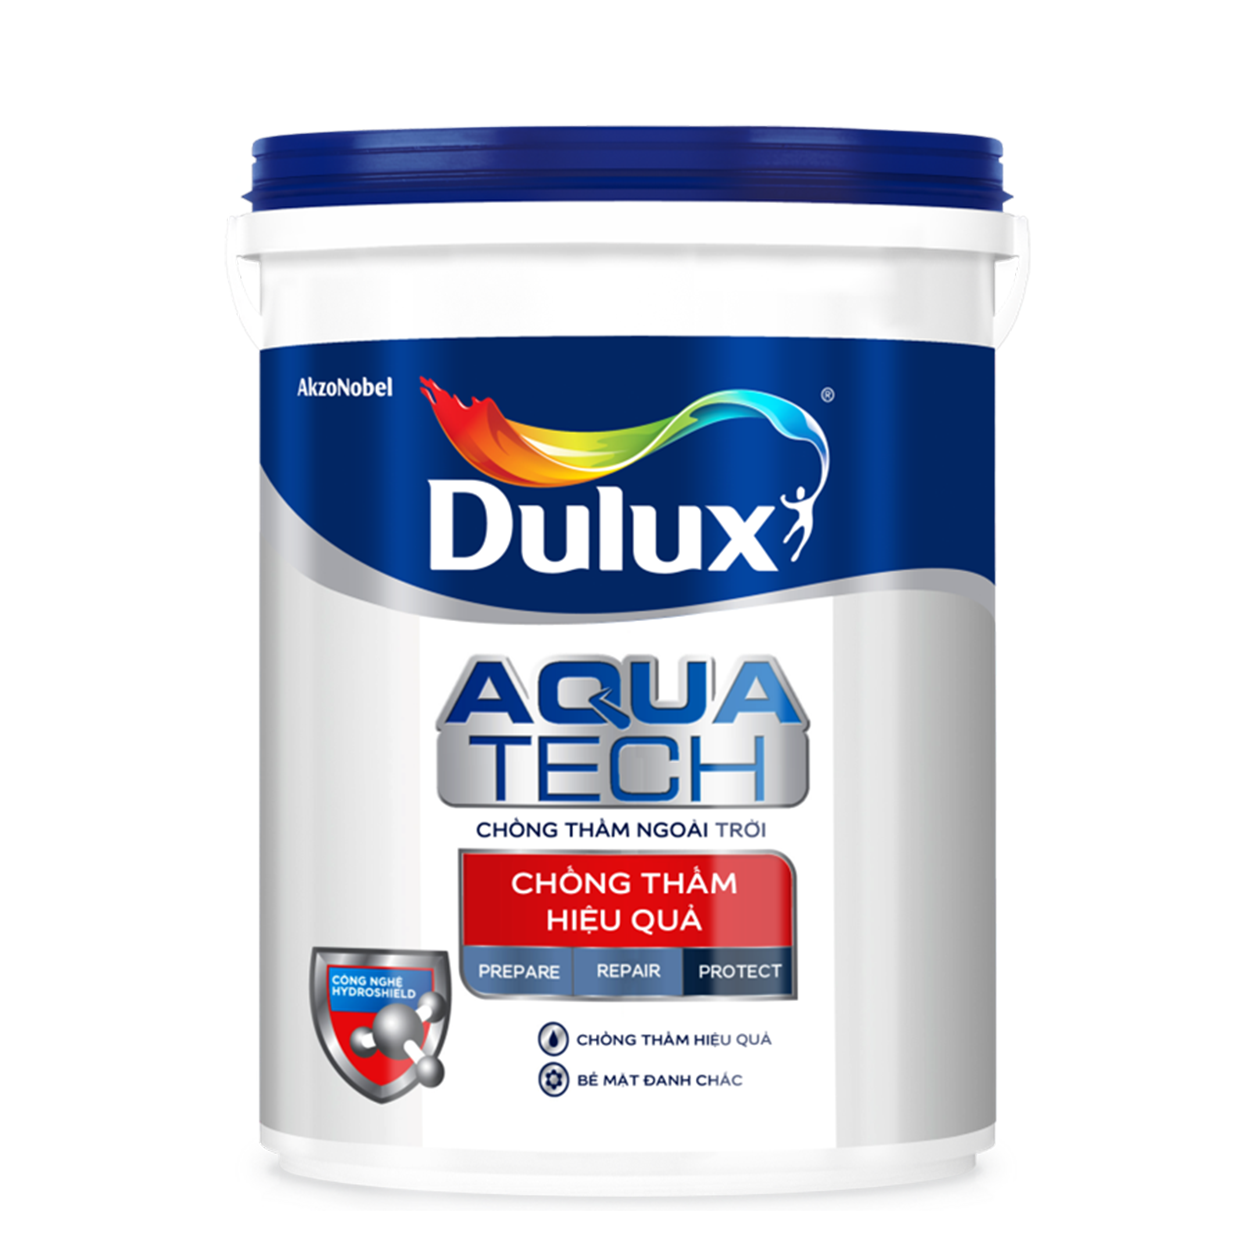 Đánh giá sơn chống thấm dulux aquatech sản phẩm tốt nhất